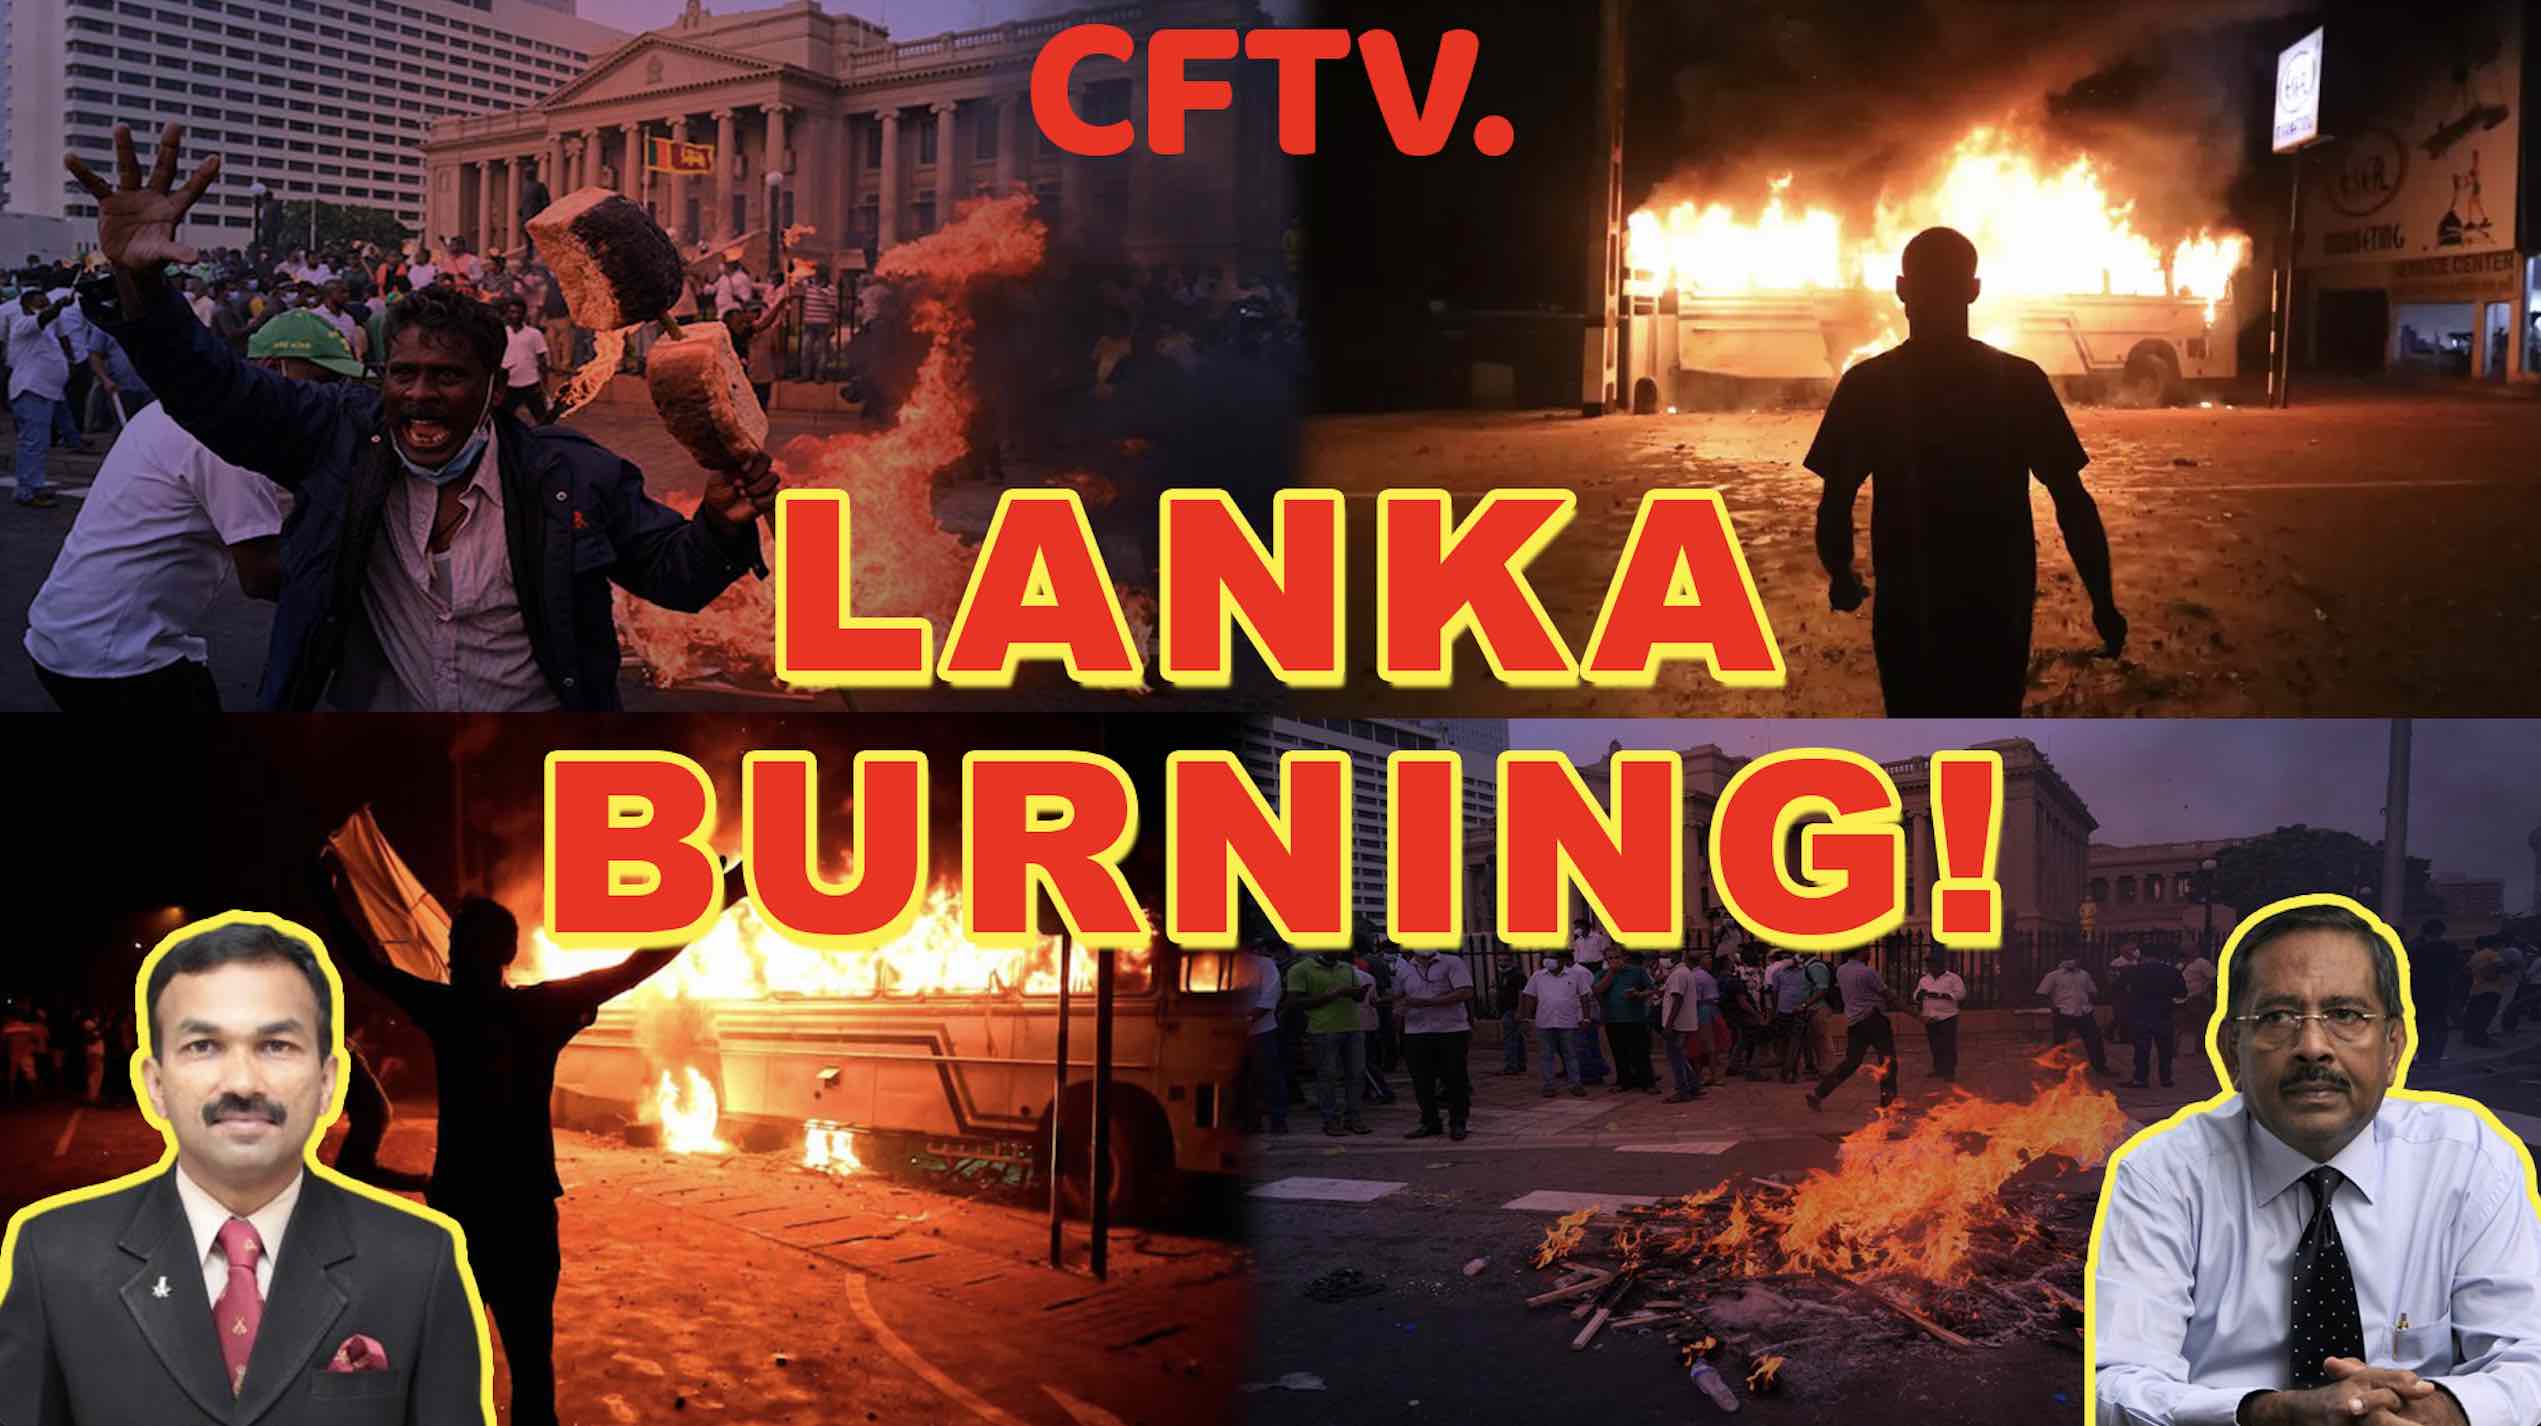 Lanka Burning!